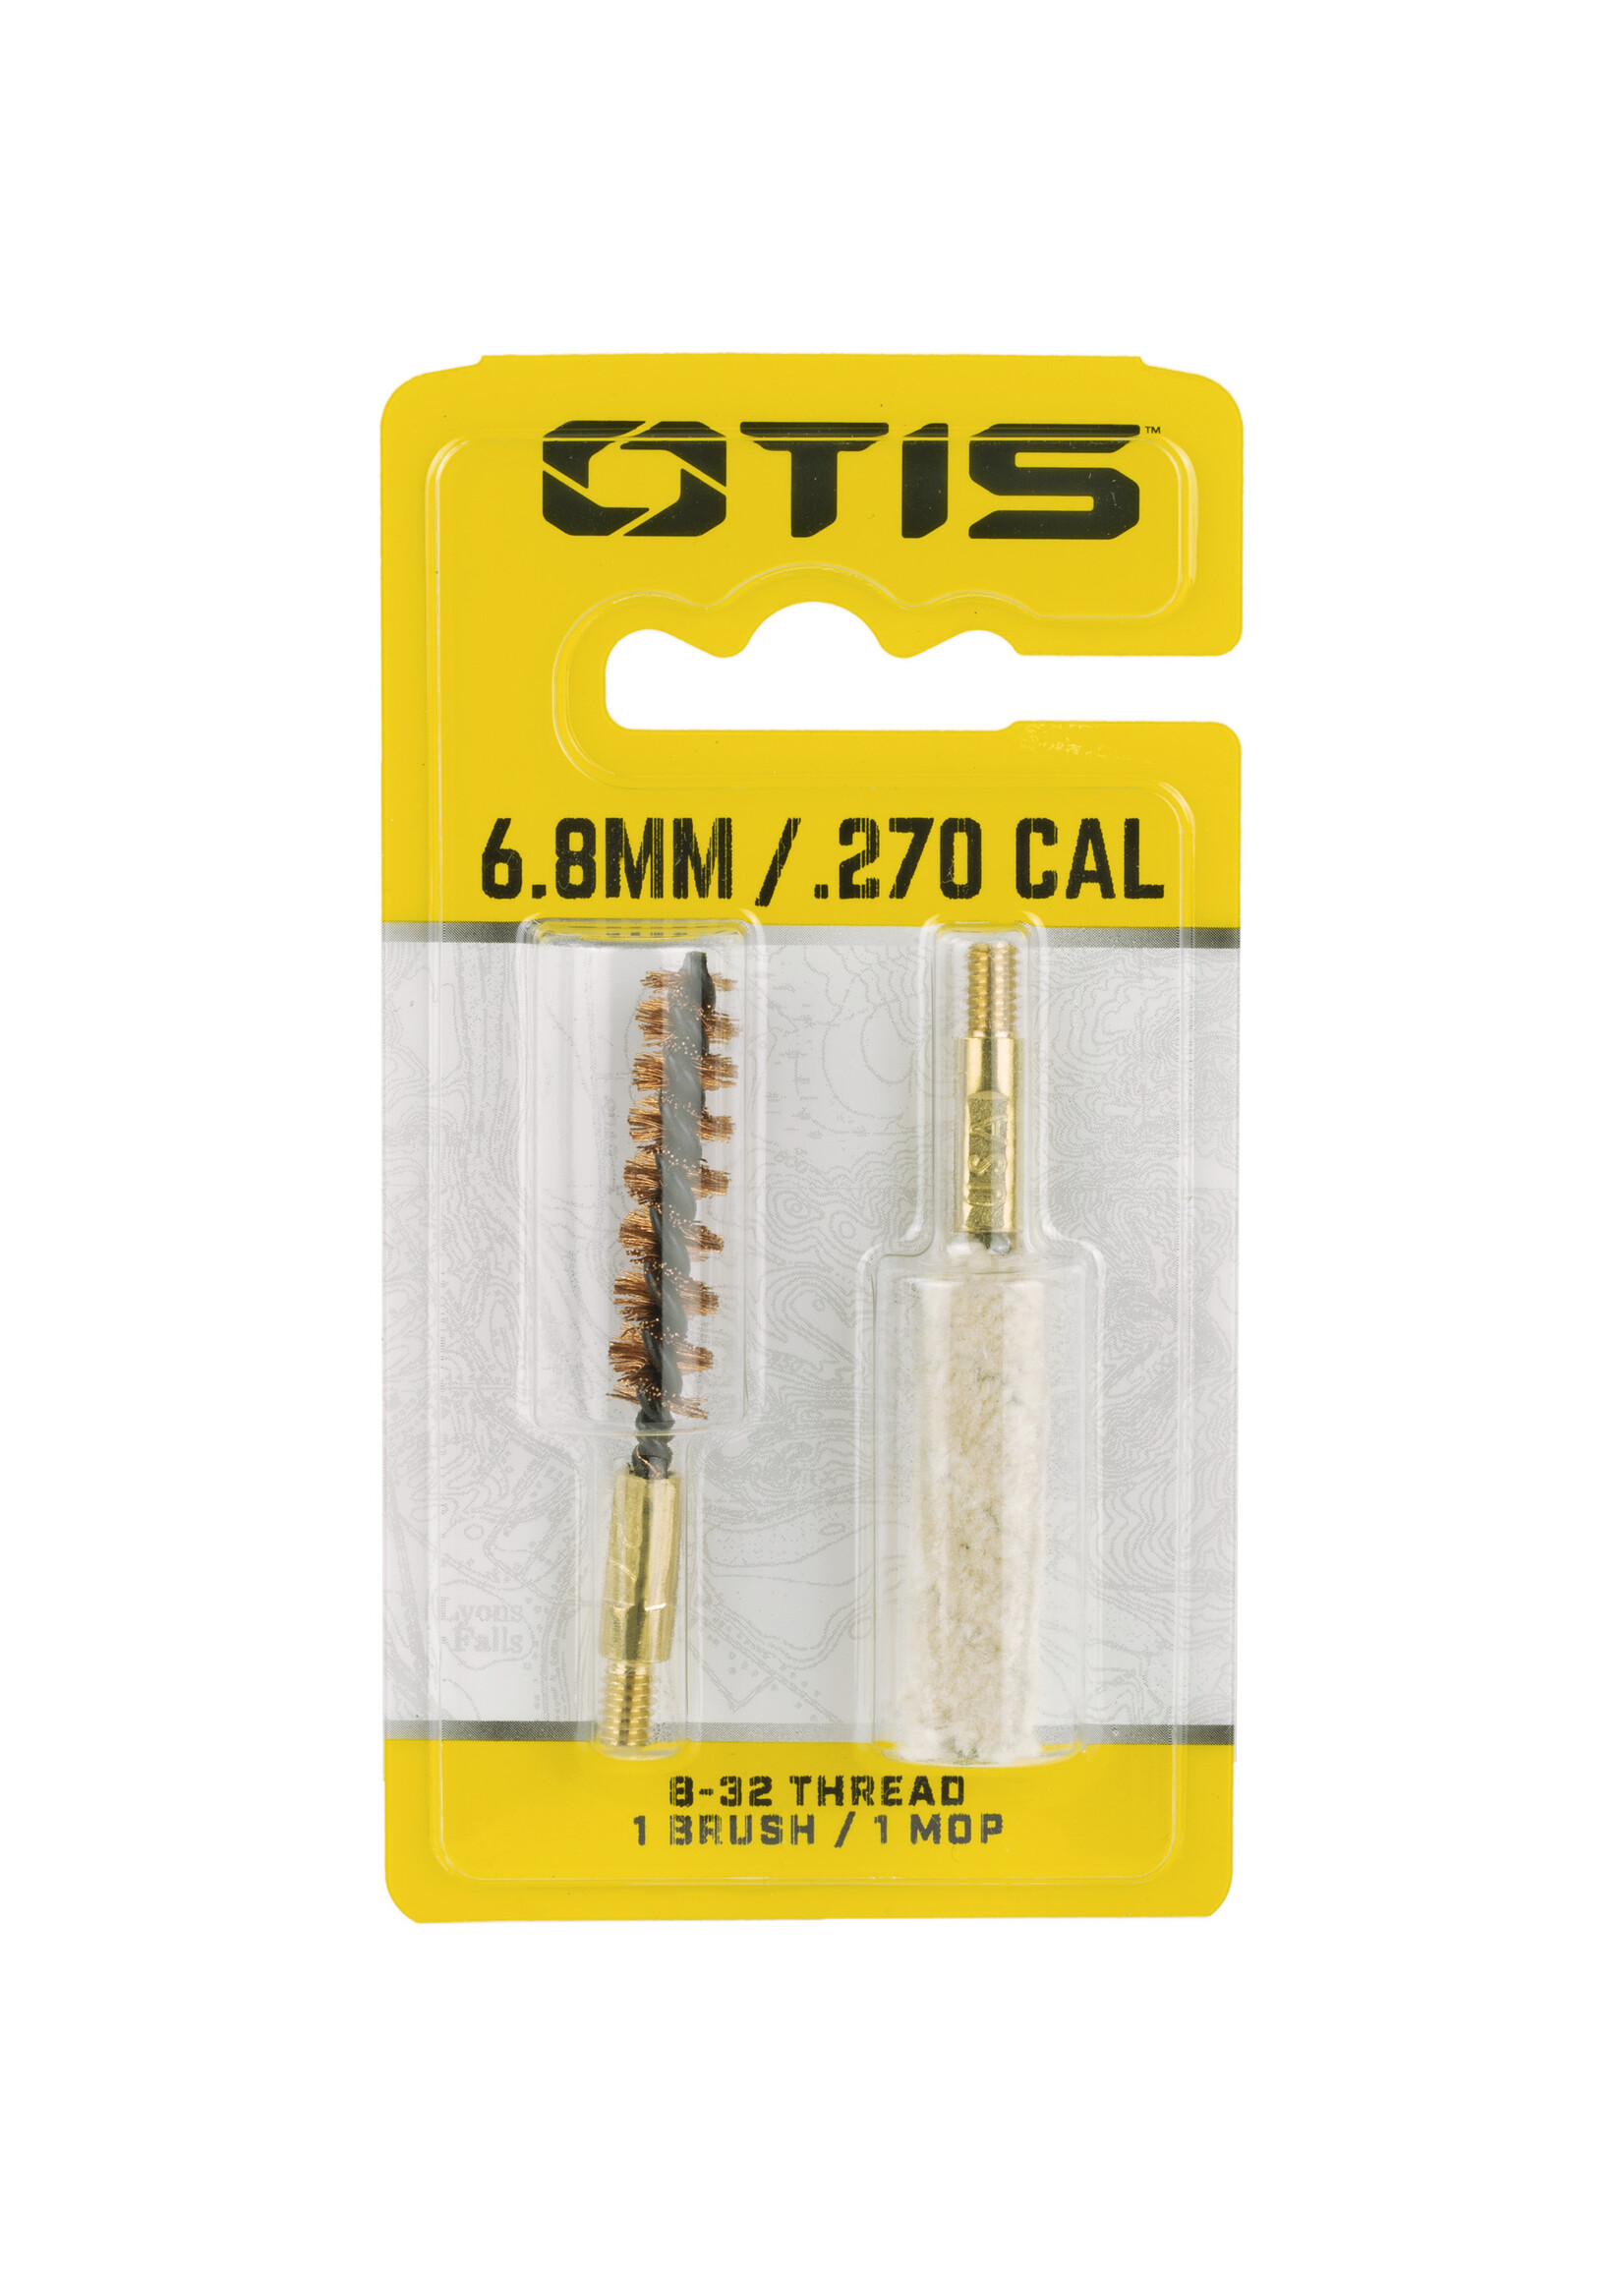 OTIS 6.8MM/.270CAL BRUSH/MOP COMBO PACK